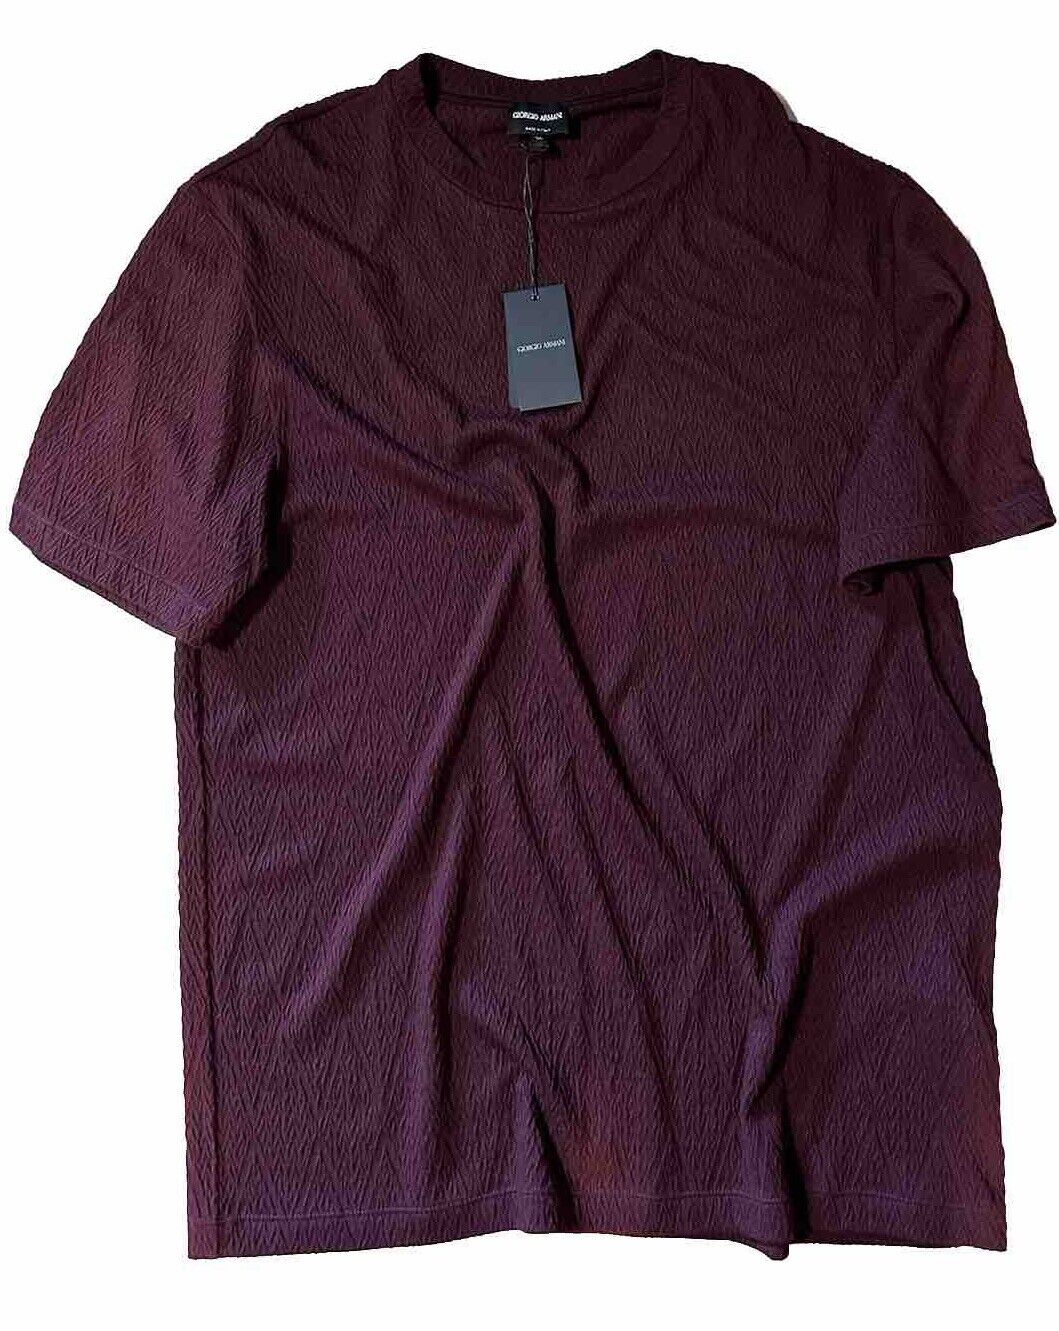 NWT $595 Giorgio Armani Men Cashmere Blend T Shirt Burgundy XXL ( 56 Eu ) Italy